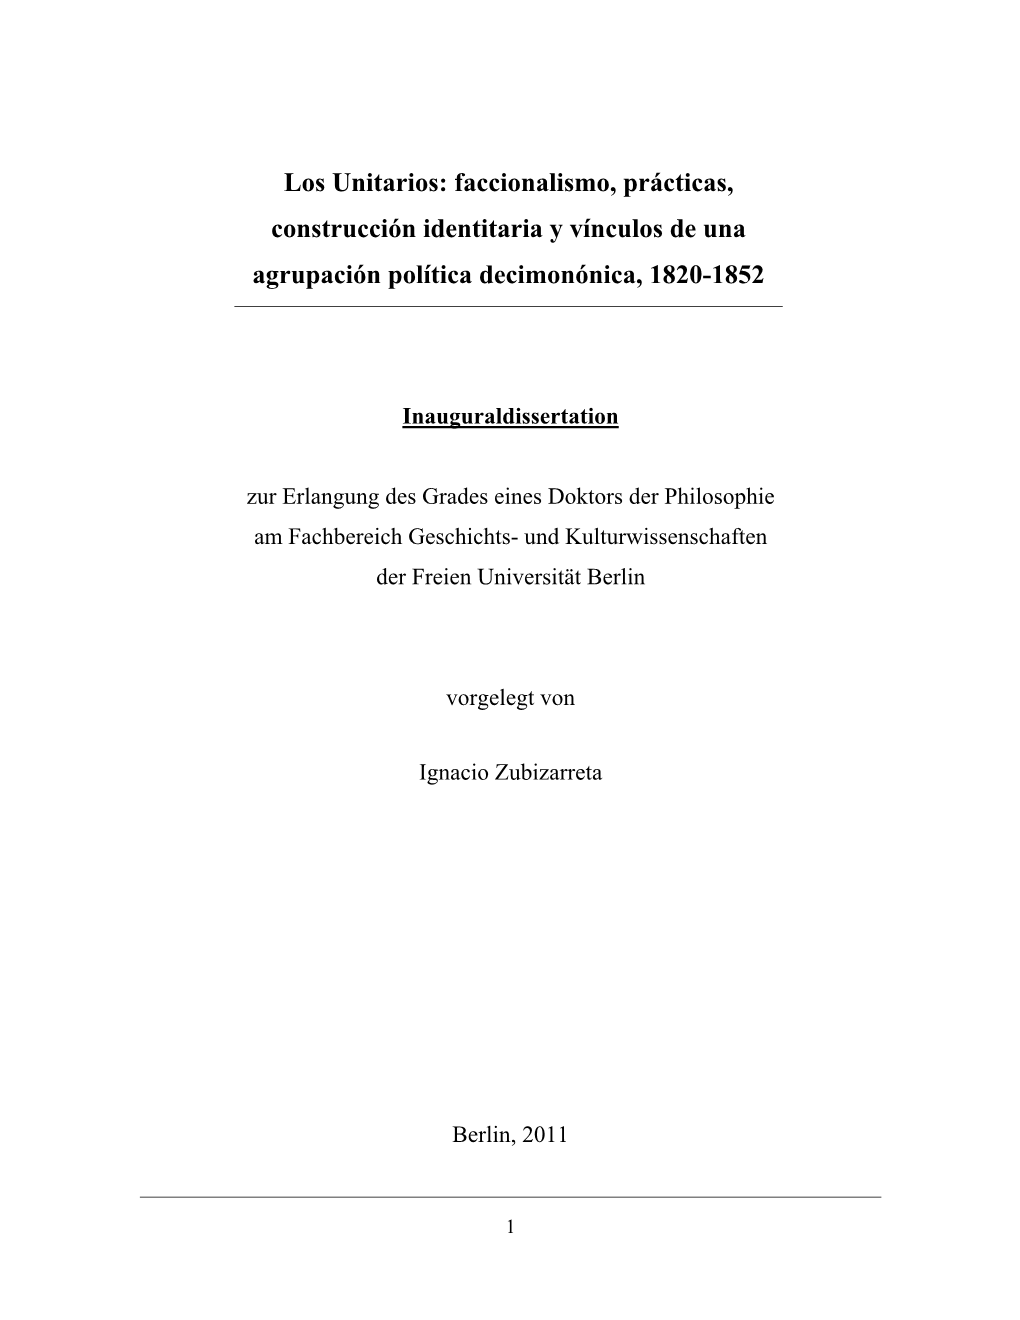 Los Unitarios: Faccionalismo, Prácticas, Construcción Identitaria Y Vínculos De Una Agrupación Política Decimonónica, 1820-1852